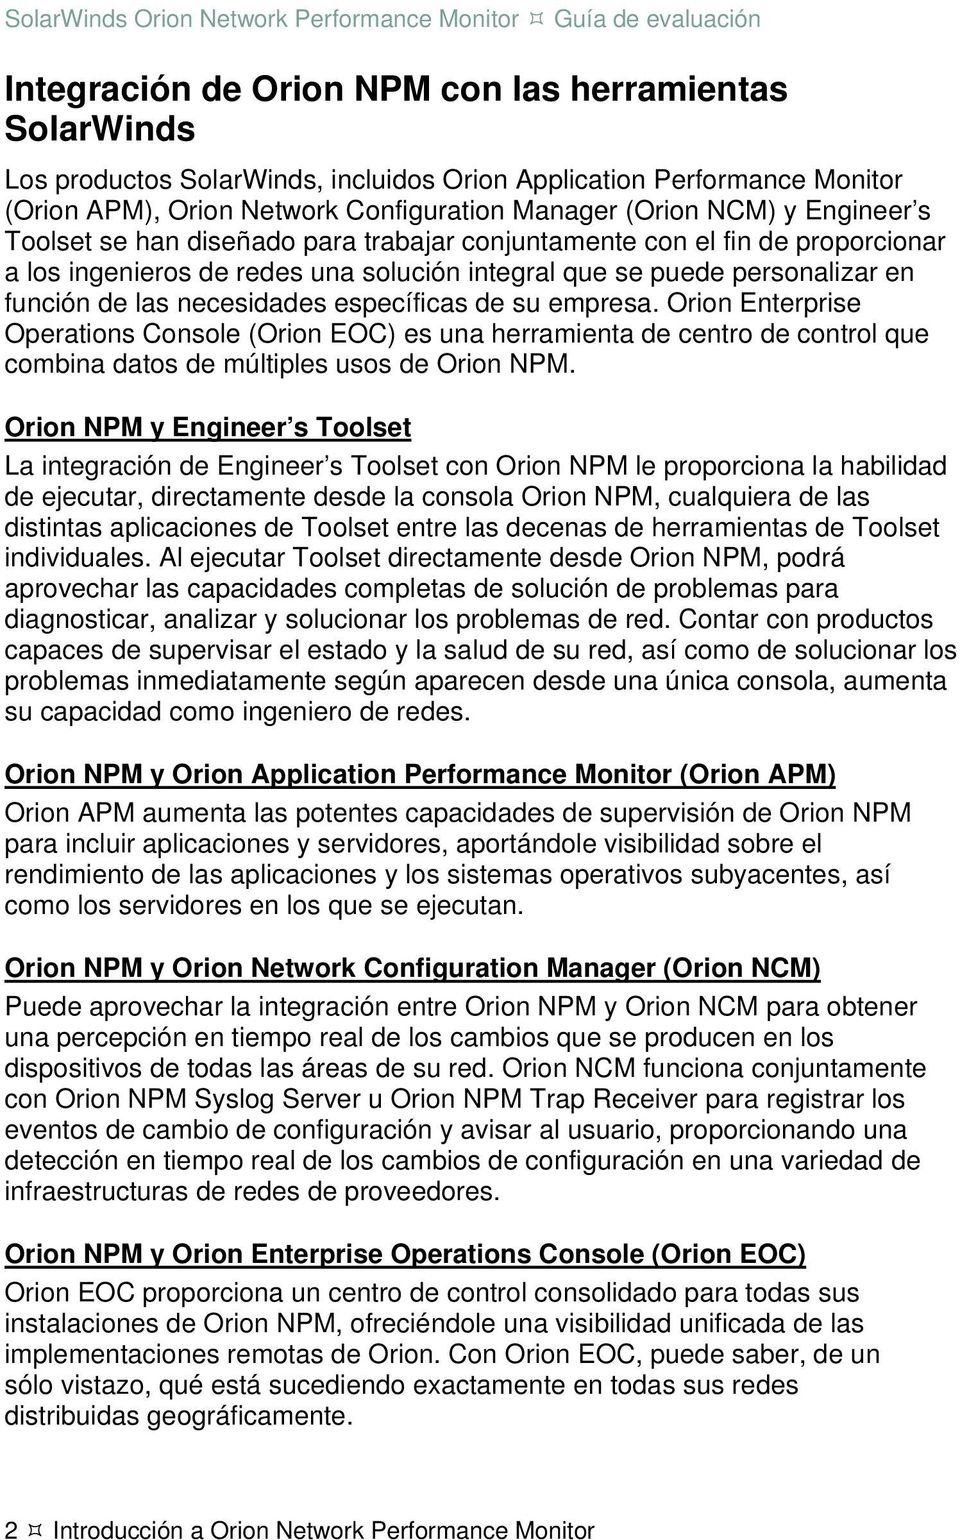 específicas de su empresa. Orion Enterprise Operations Console (Orion EOC) es una herramienta de centro de control que combina datos de múltiples usos de Orion NPM.